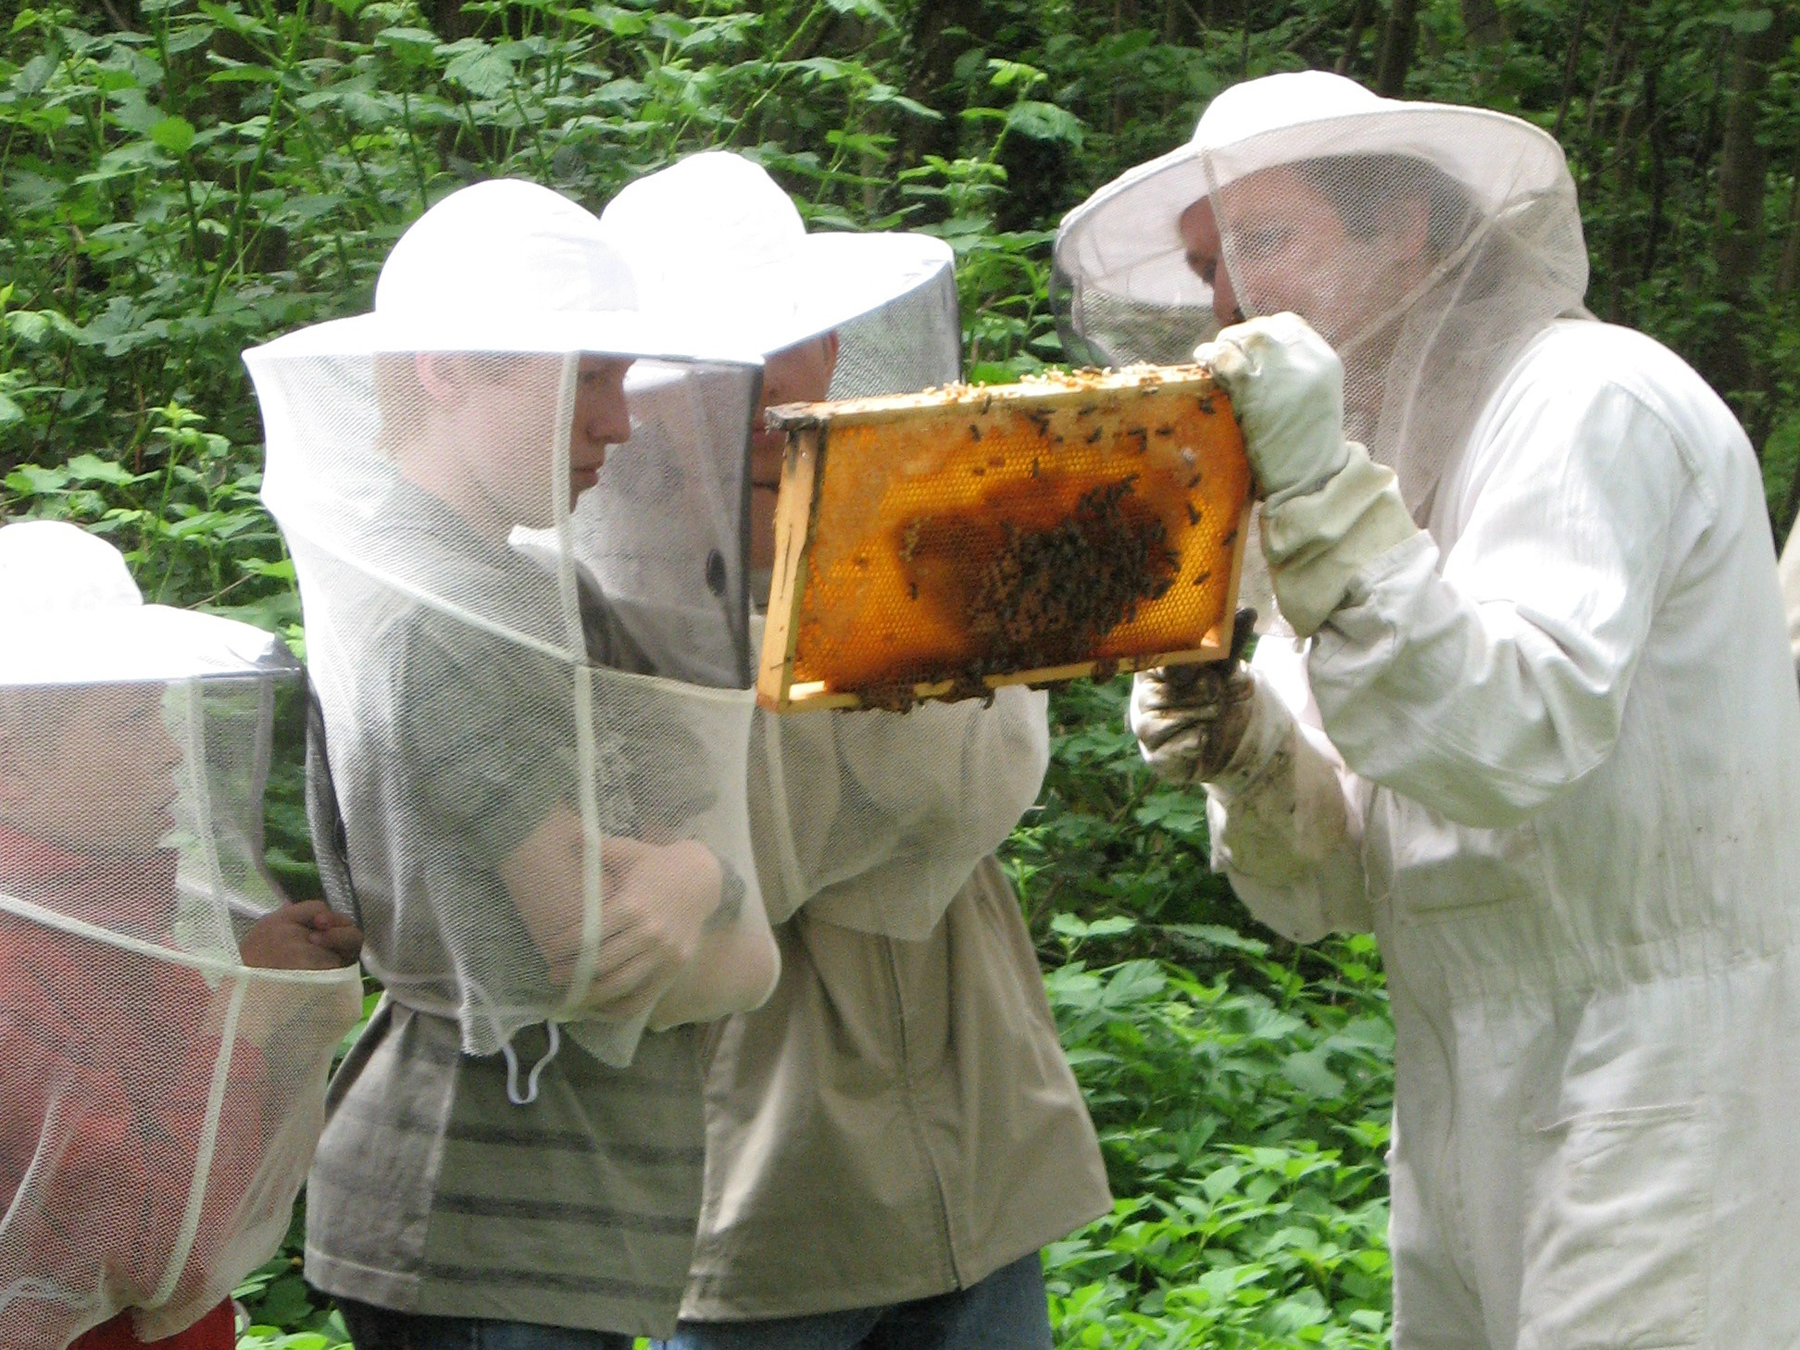 Freilandunterricht zum Thema “Honigbiene“